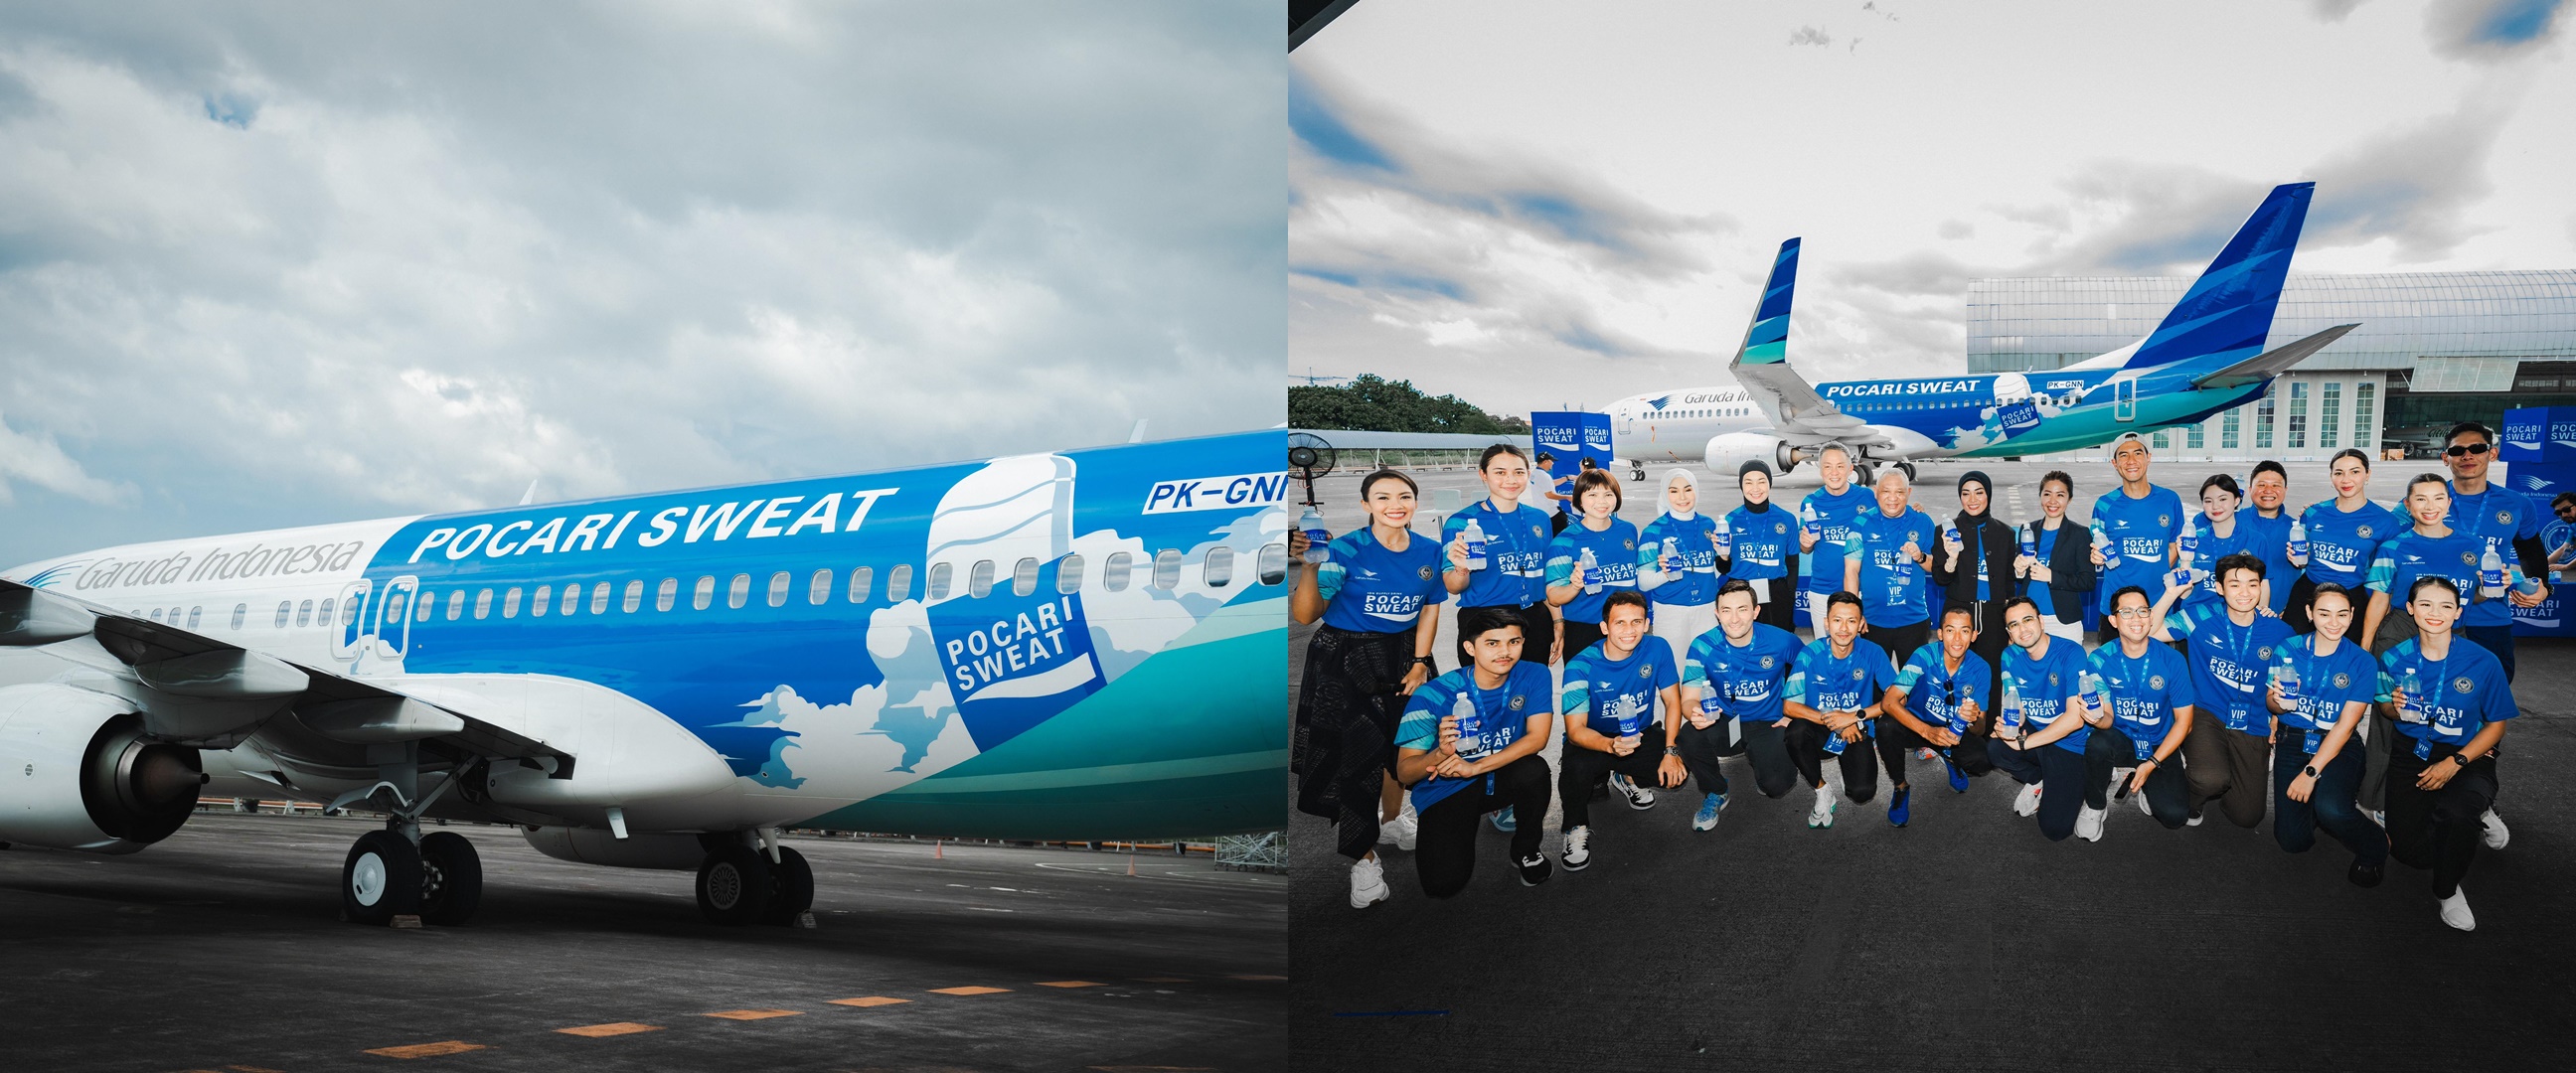 Garuda Indonesia luncurkan pesawat bercorak Pocari Sweat, bentuk dukungan untuk sport tourism